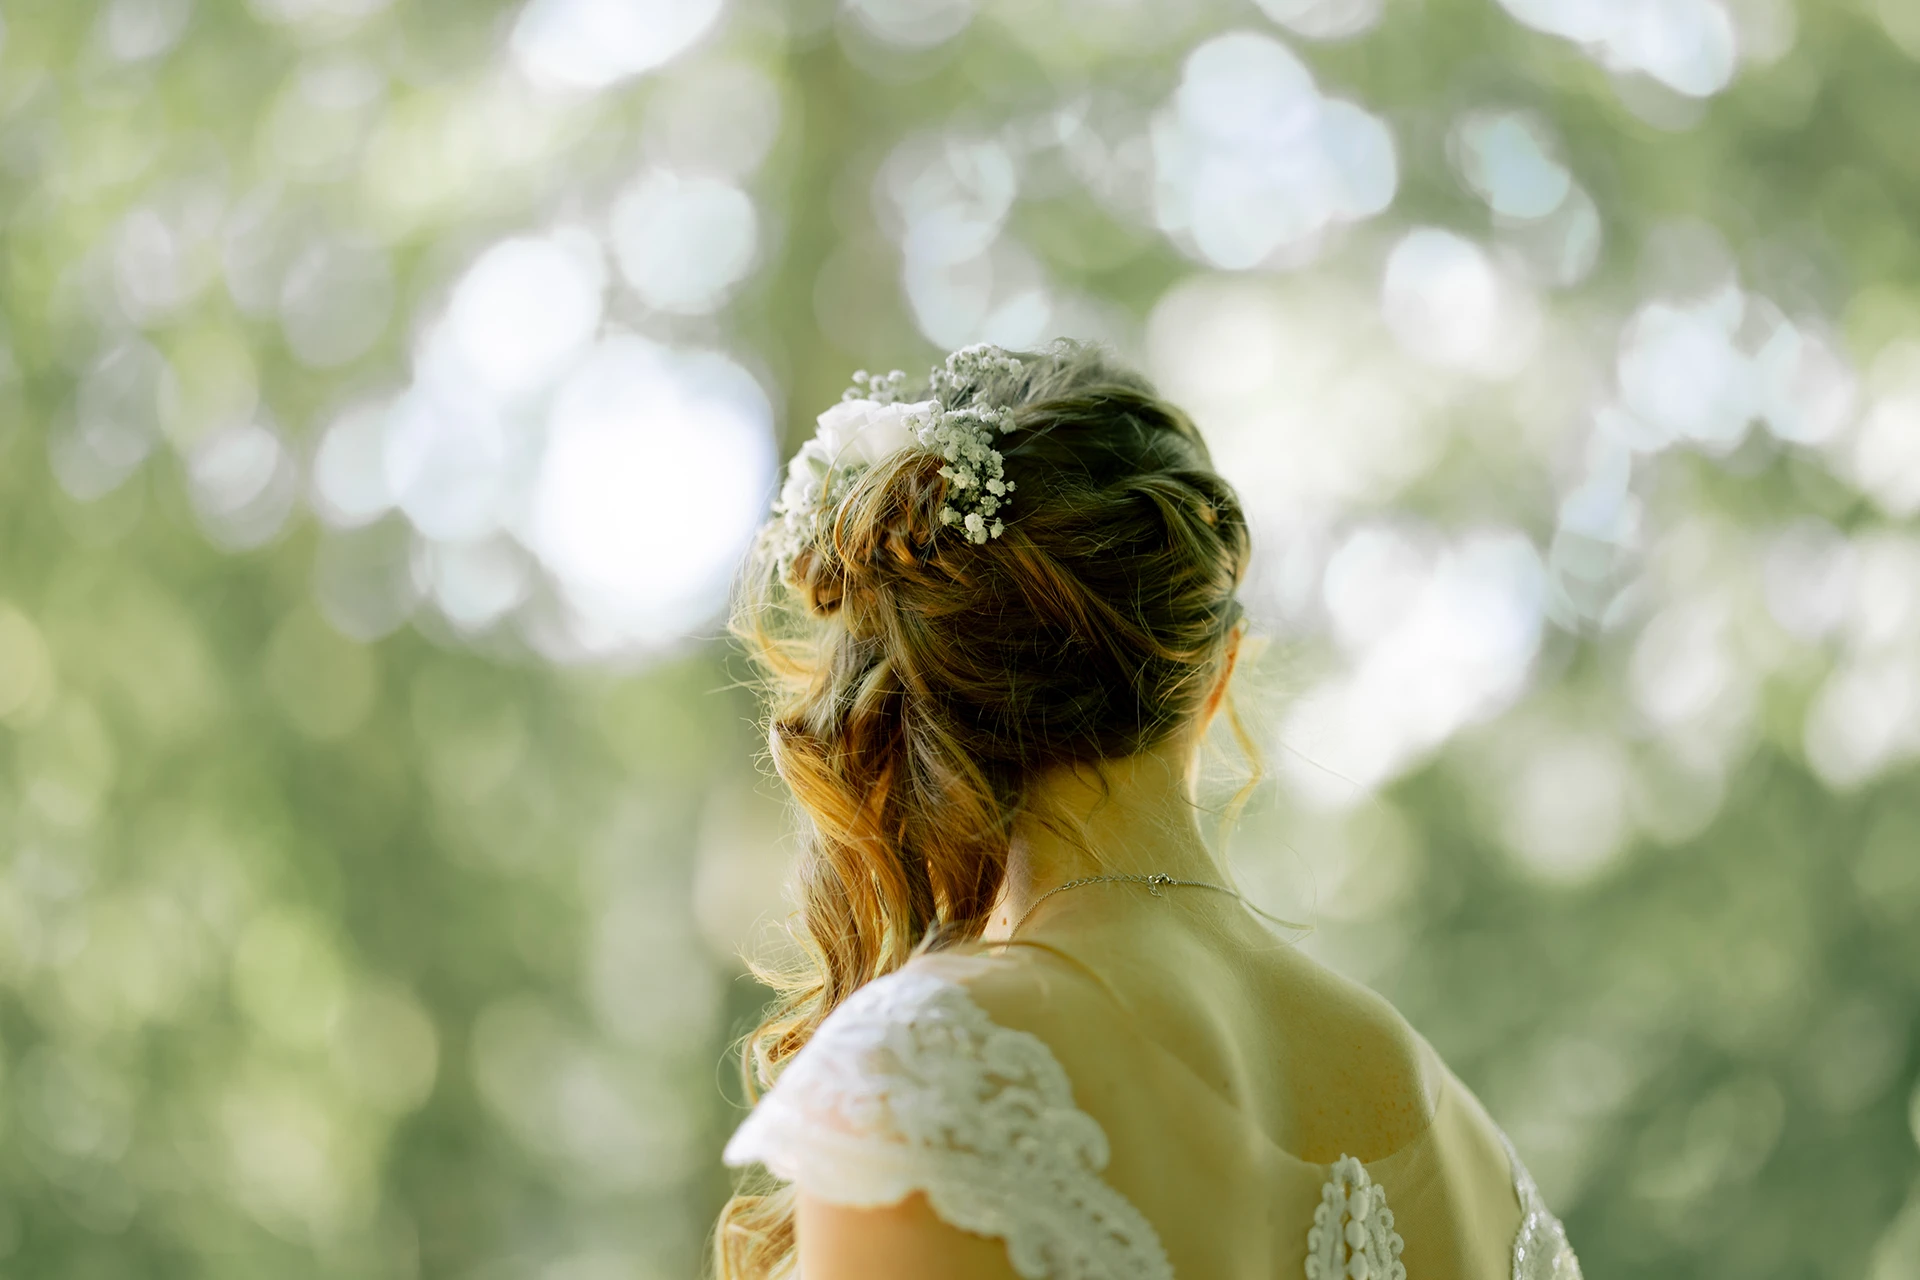 Die Braut von hinten, man ereknnt den Blumenschmuck im Haar.